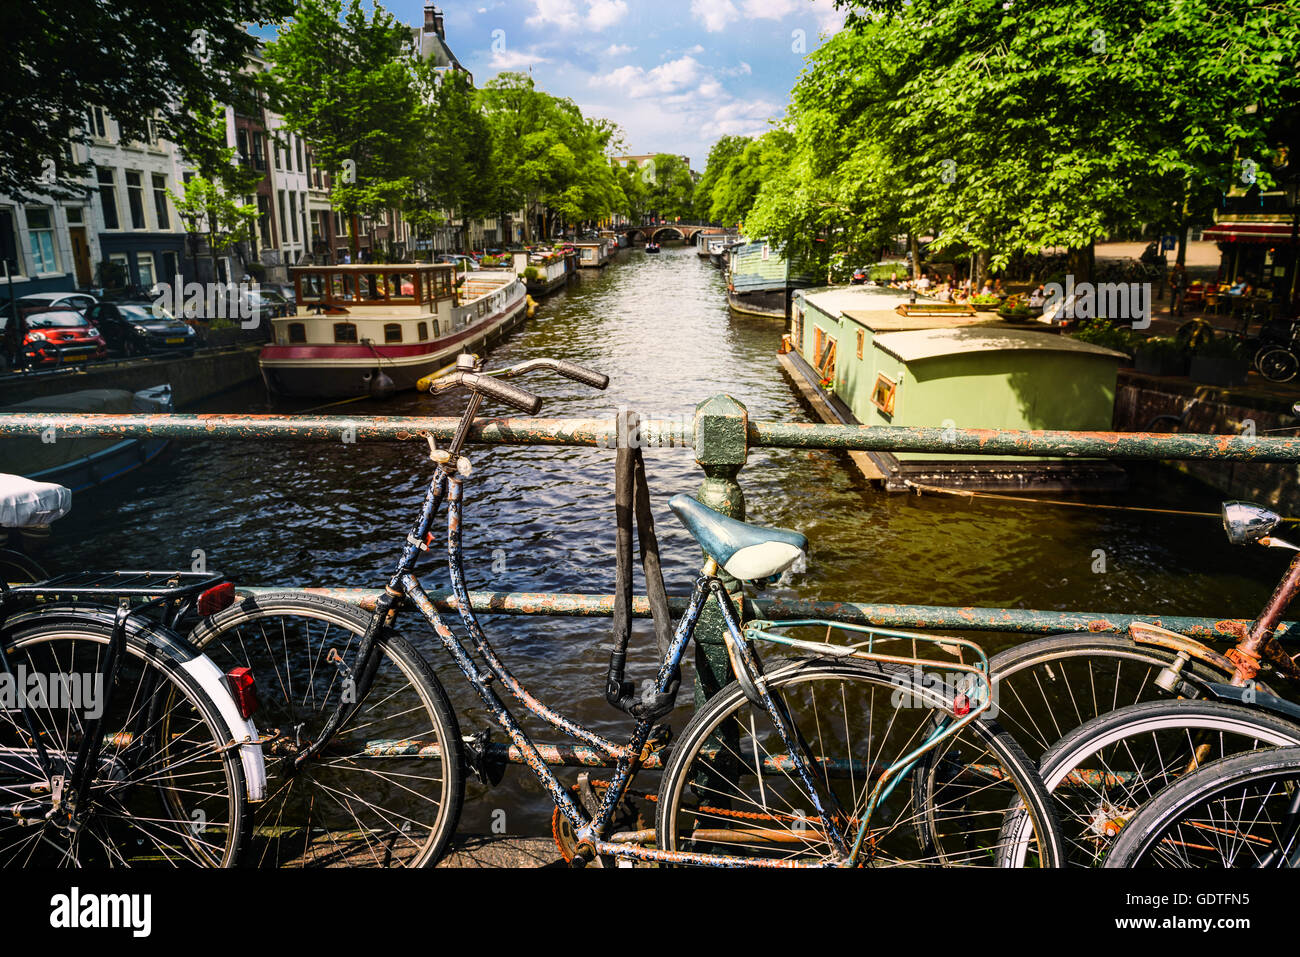 Des vélos sur le pont à Amsterdam Pays-Bas Banque D'Images